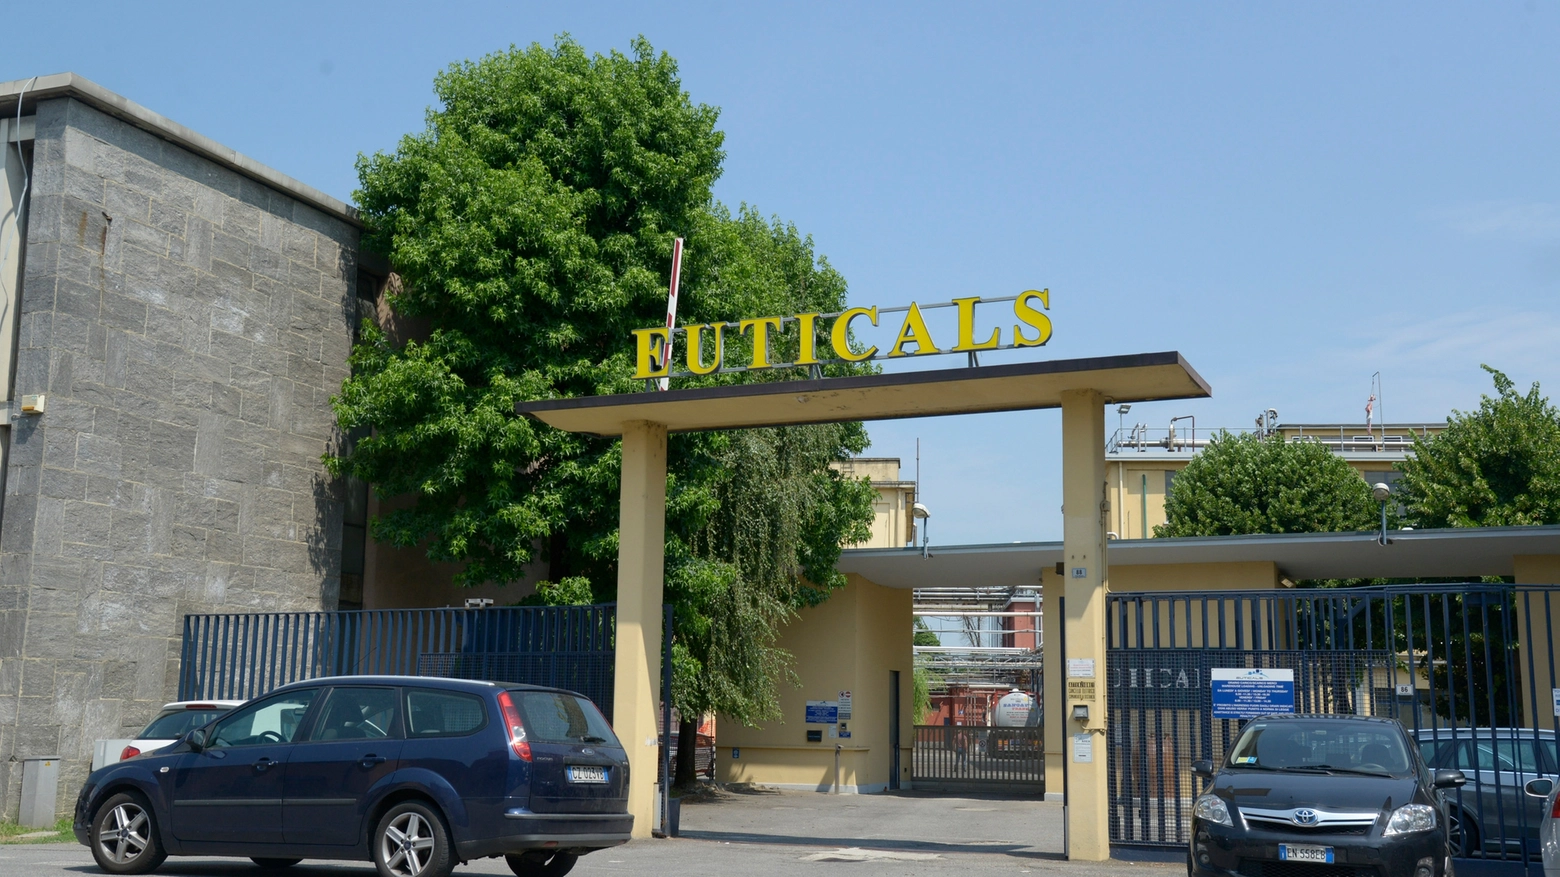 Lo stabilimento Euticals di viale Milano a Lodi